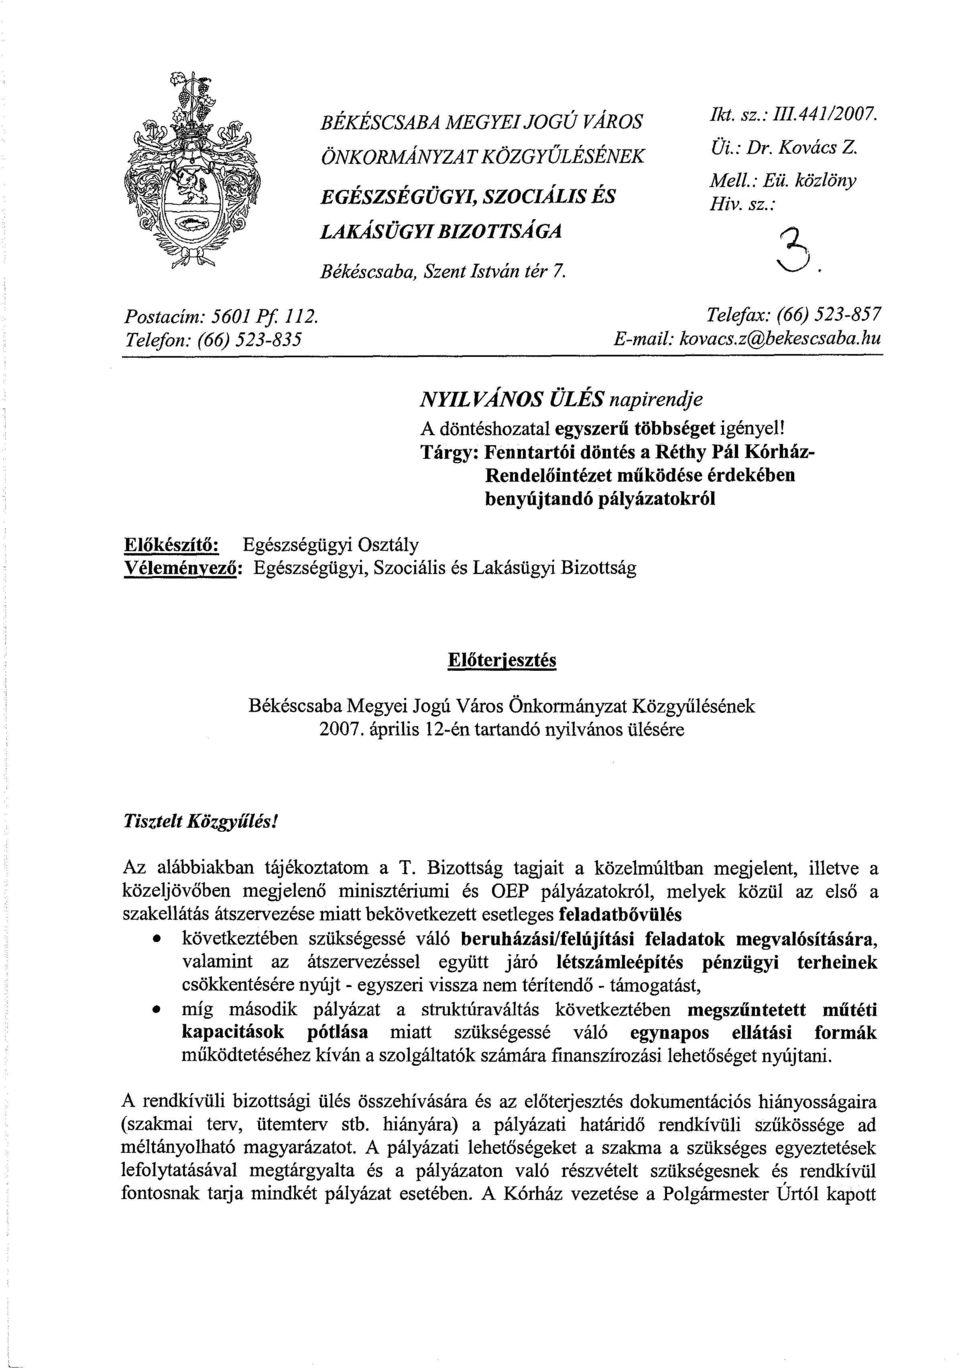 Tárgy: Fenntartói döntés a Réthy Pál Kórház- Rendelőintézet működése érdekében benyújtandó pályázatokról Előkészítő: Egészségügyi Osztály Véleményező: Egészségügyi, Szociális és Lakásügyi Bizottság